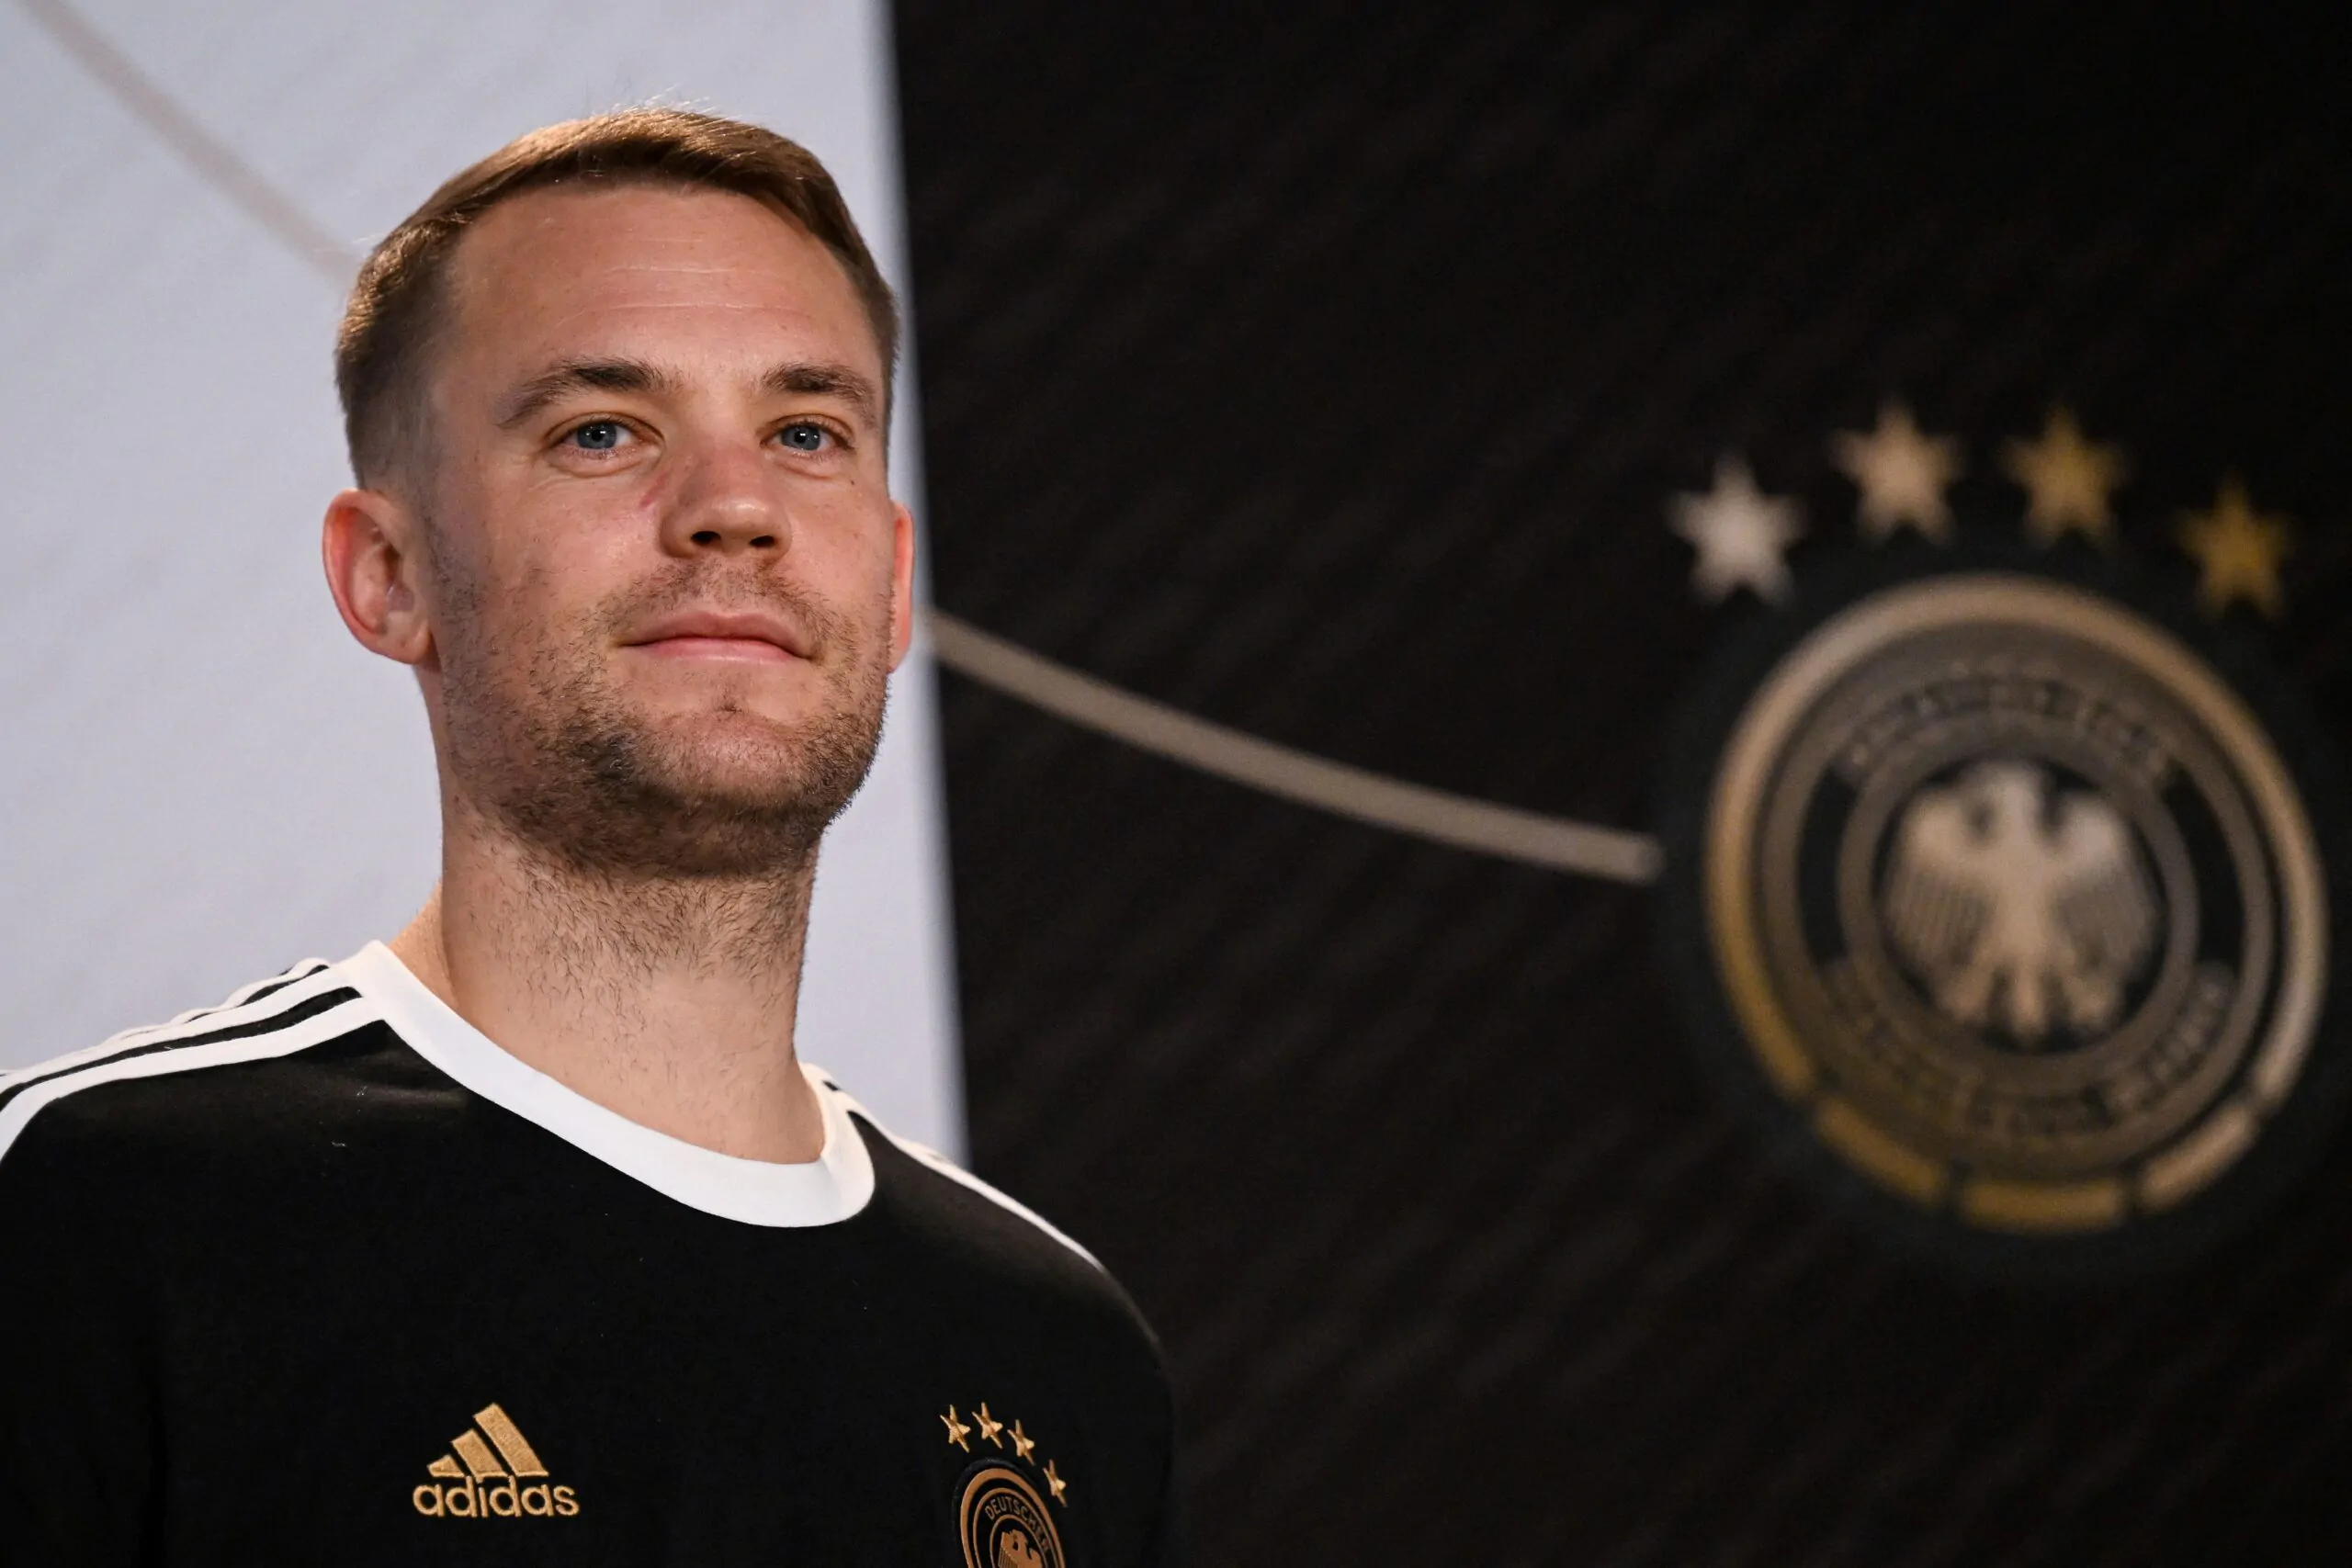 Mondiali 2022, Neuer annuncia: “Germania in campo con la fascia One Love, nessuna paura”